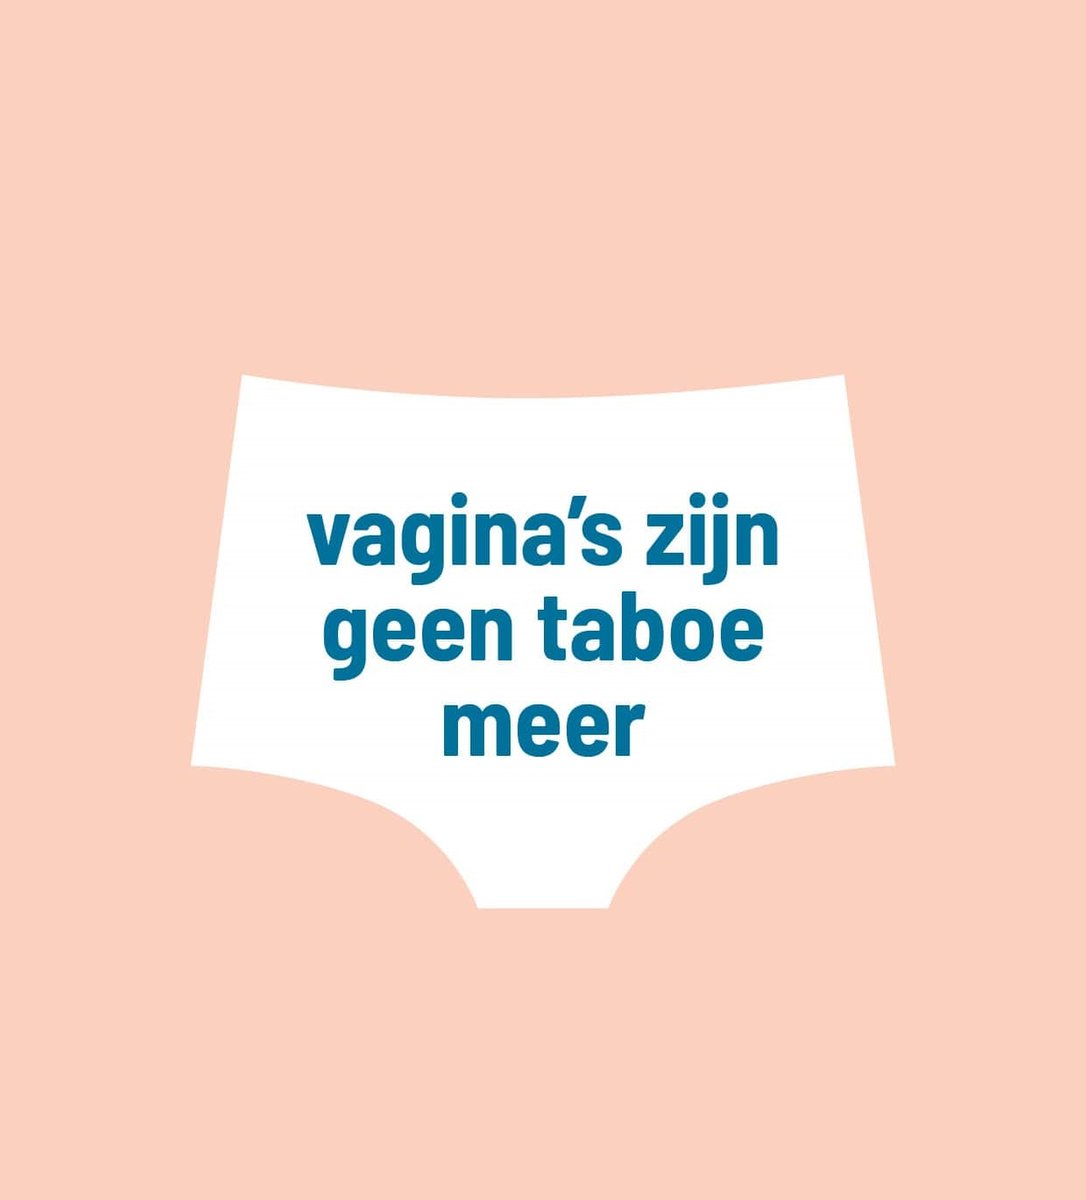 In de kijker bij #RoSaschrijft : @Isala_UAntwerp, het baanbrekend citizenscienceproject van de @UAntwerpen dat onderzoek doet naar het vaginaal microbioom. 😍👩‍⚕️ De watte? 🤓➡️ Kom het te weten op de RoSa-website: ow.ly/bfVg50ANaR2 #LetsSwab